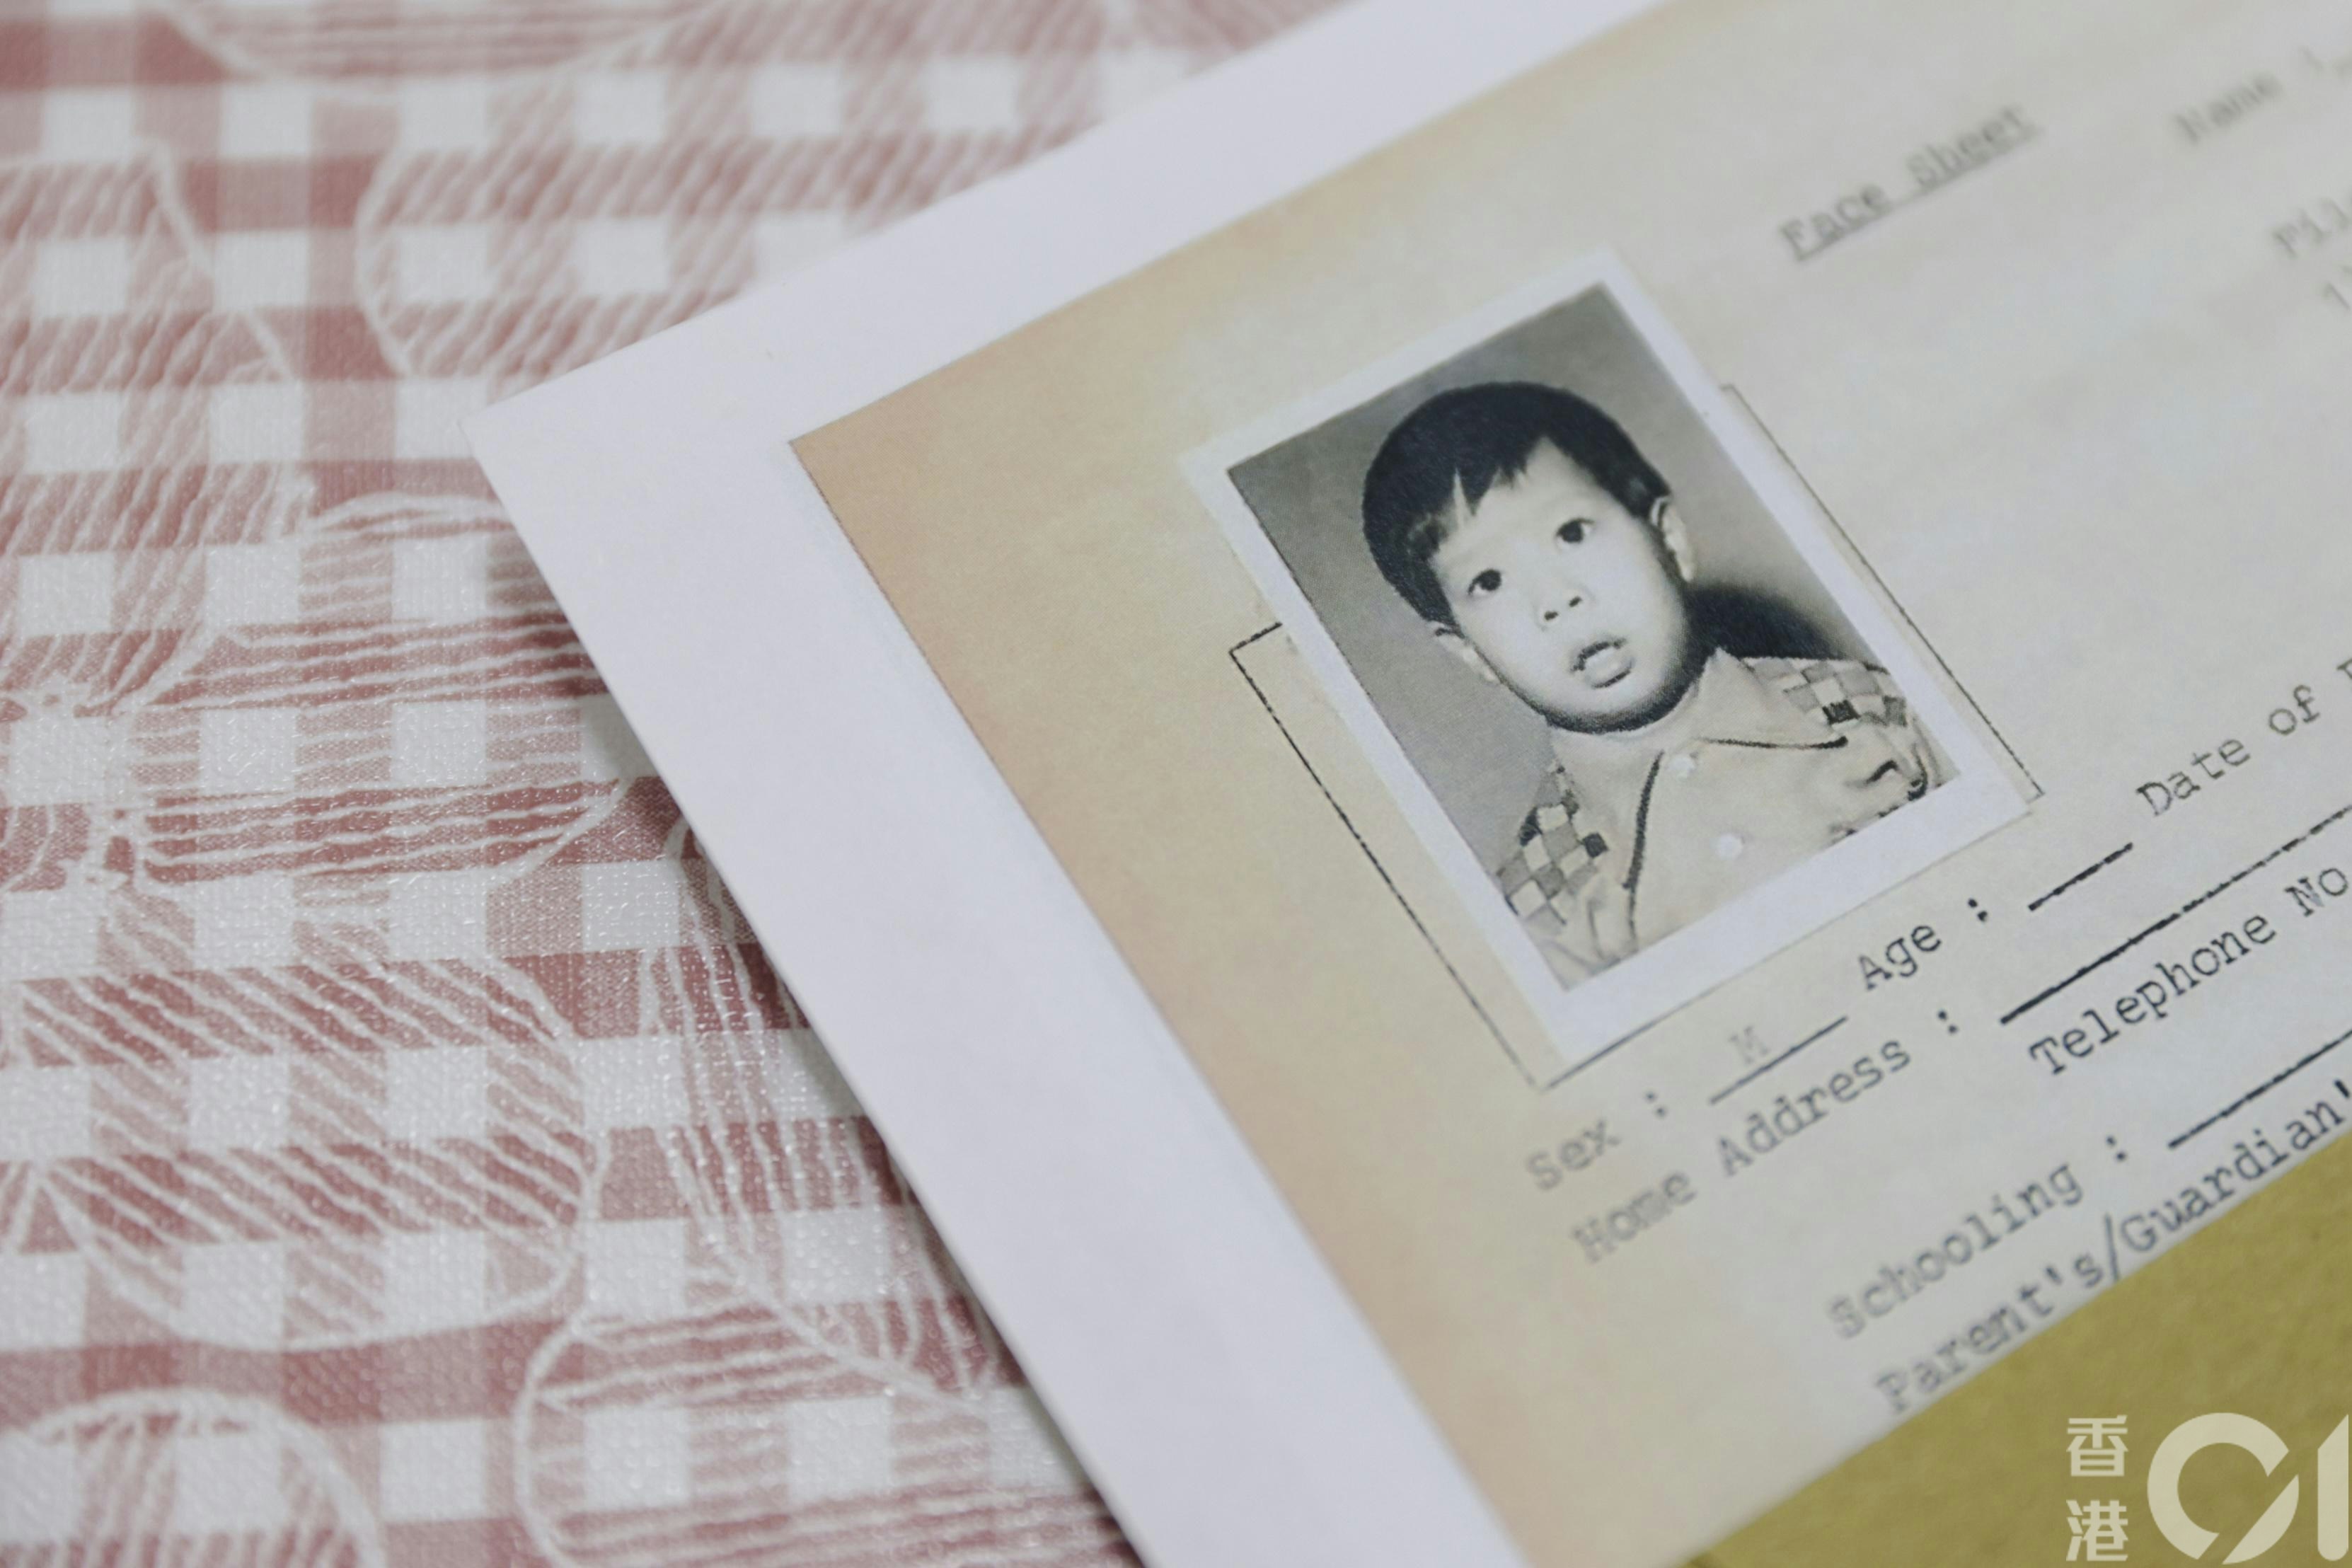 陈伟杰在6月25日取回保良局儿童住宿服务的证明书、在4岁被美国夫妇收养后前往美国的机票、儿时证件照等。（欧嘉乐摄）